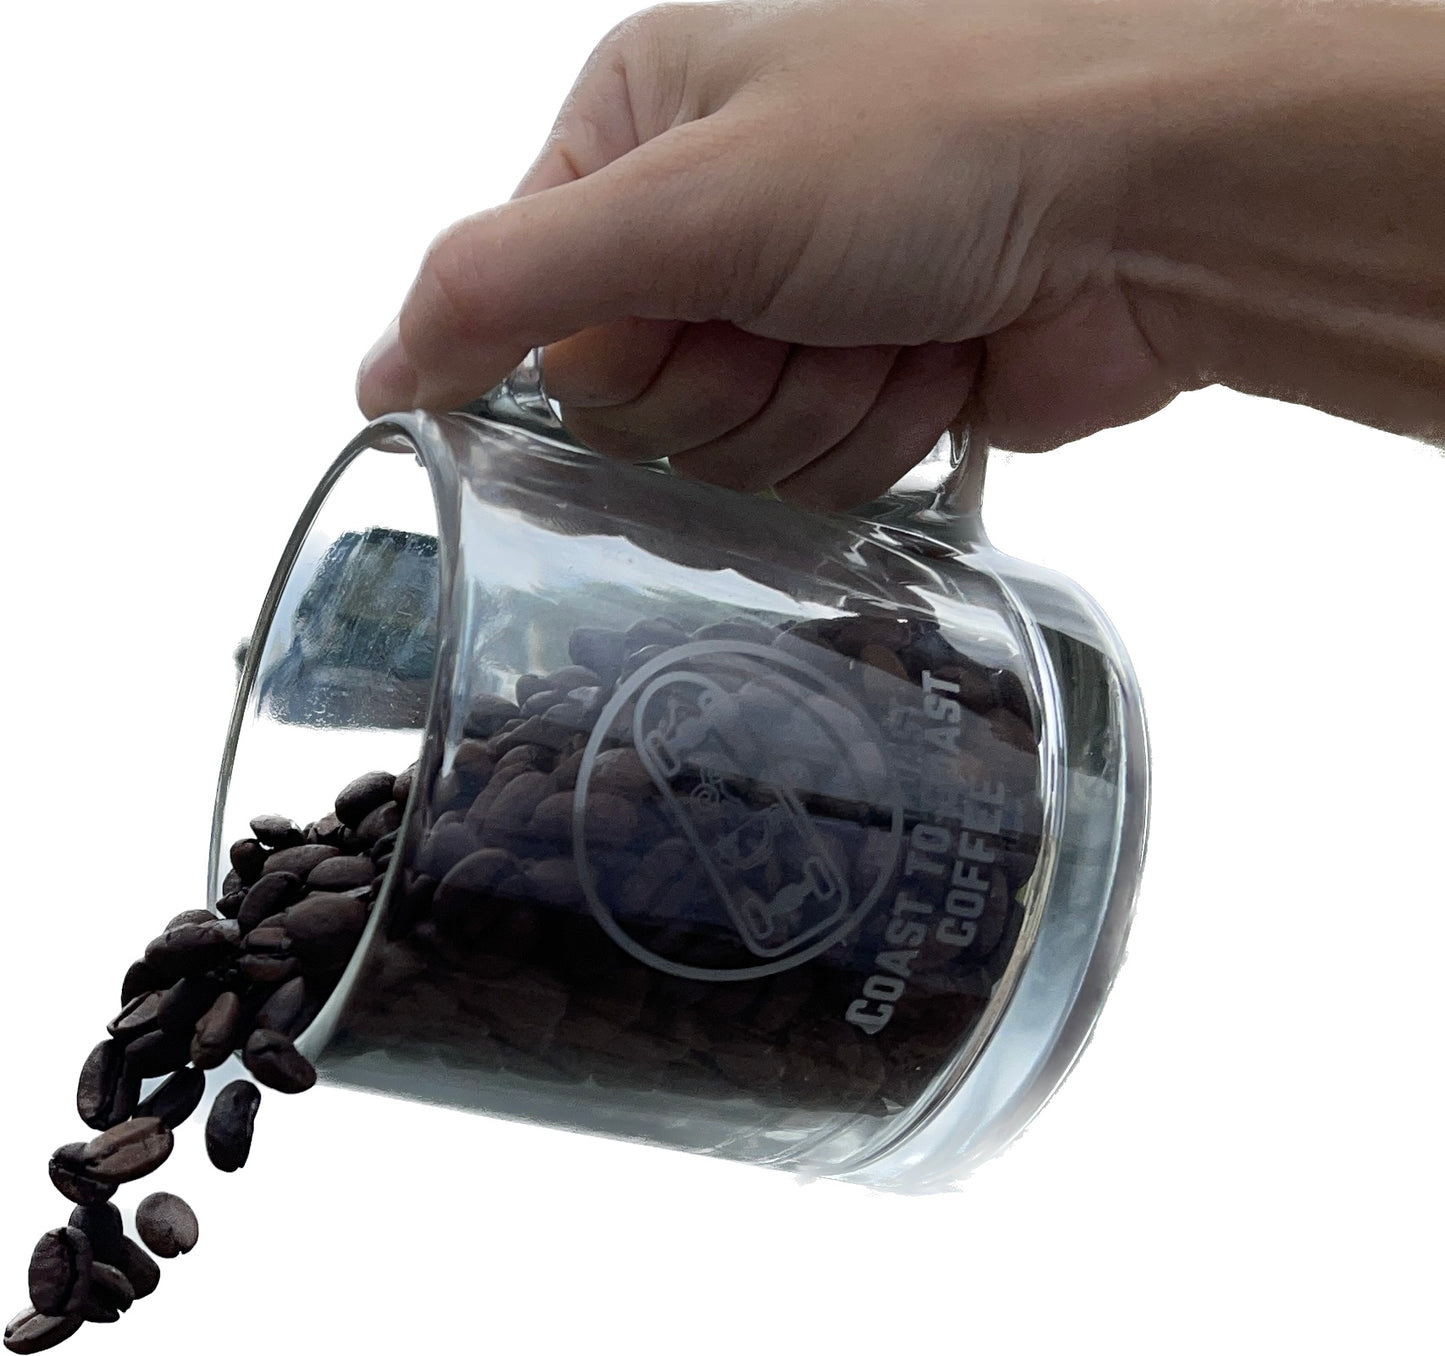 COAST TO COAST COFFEE GLASS MUG